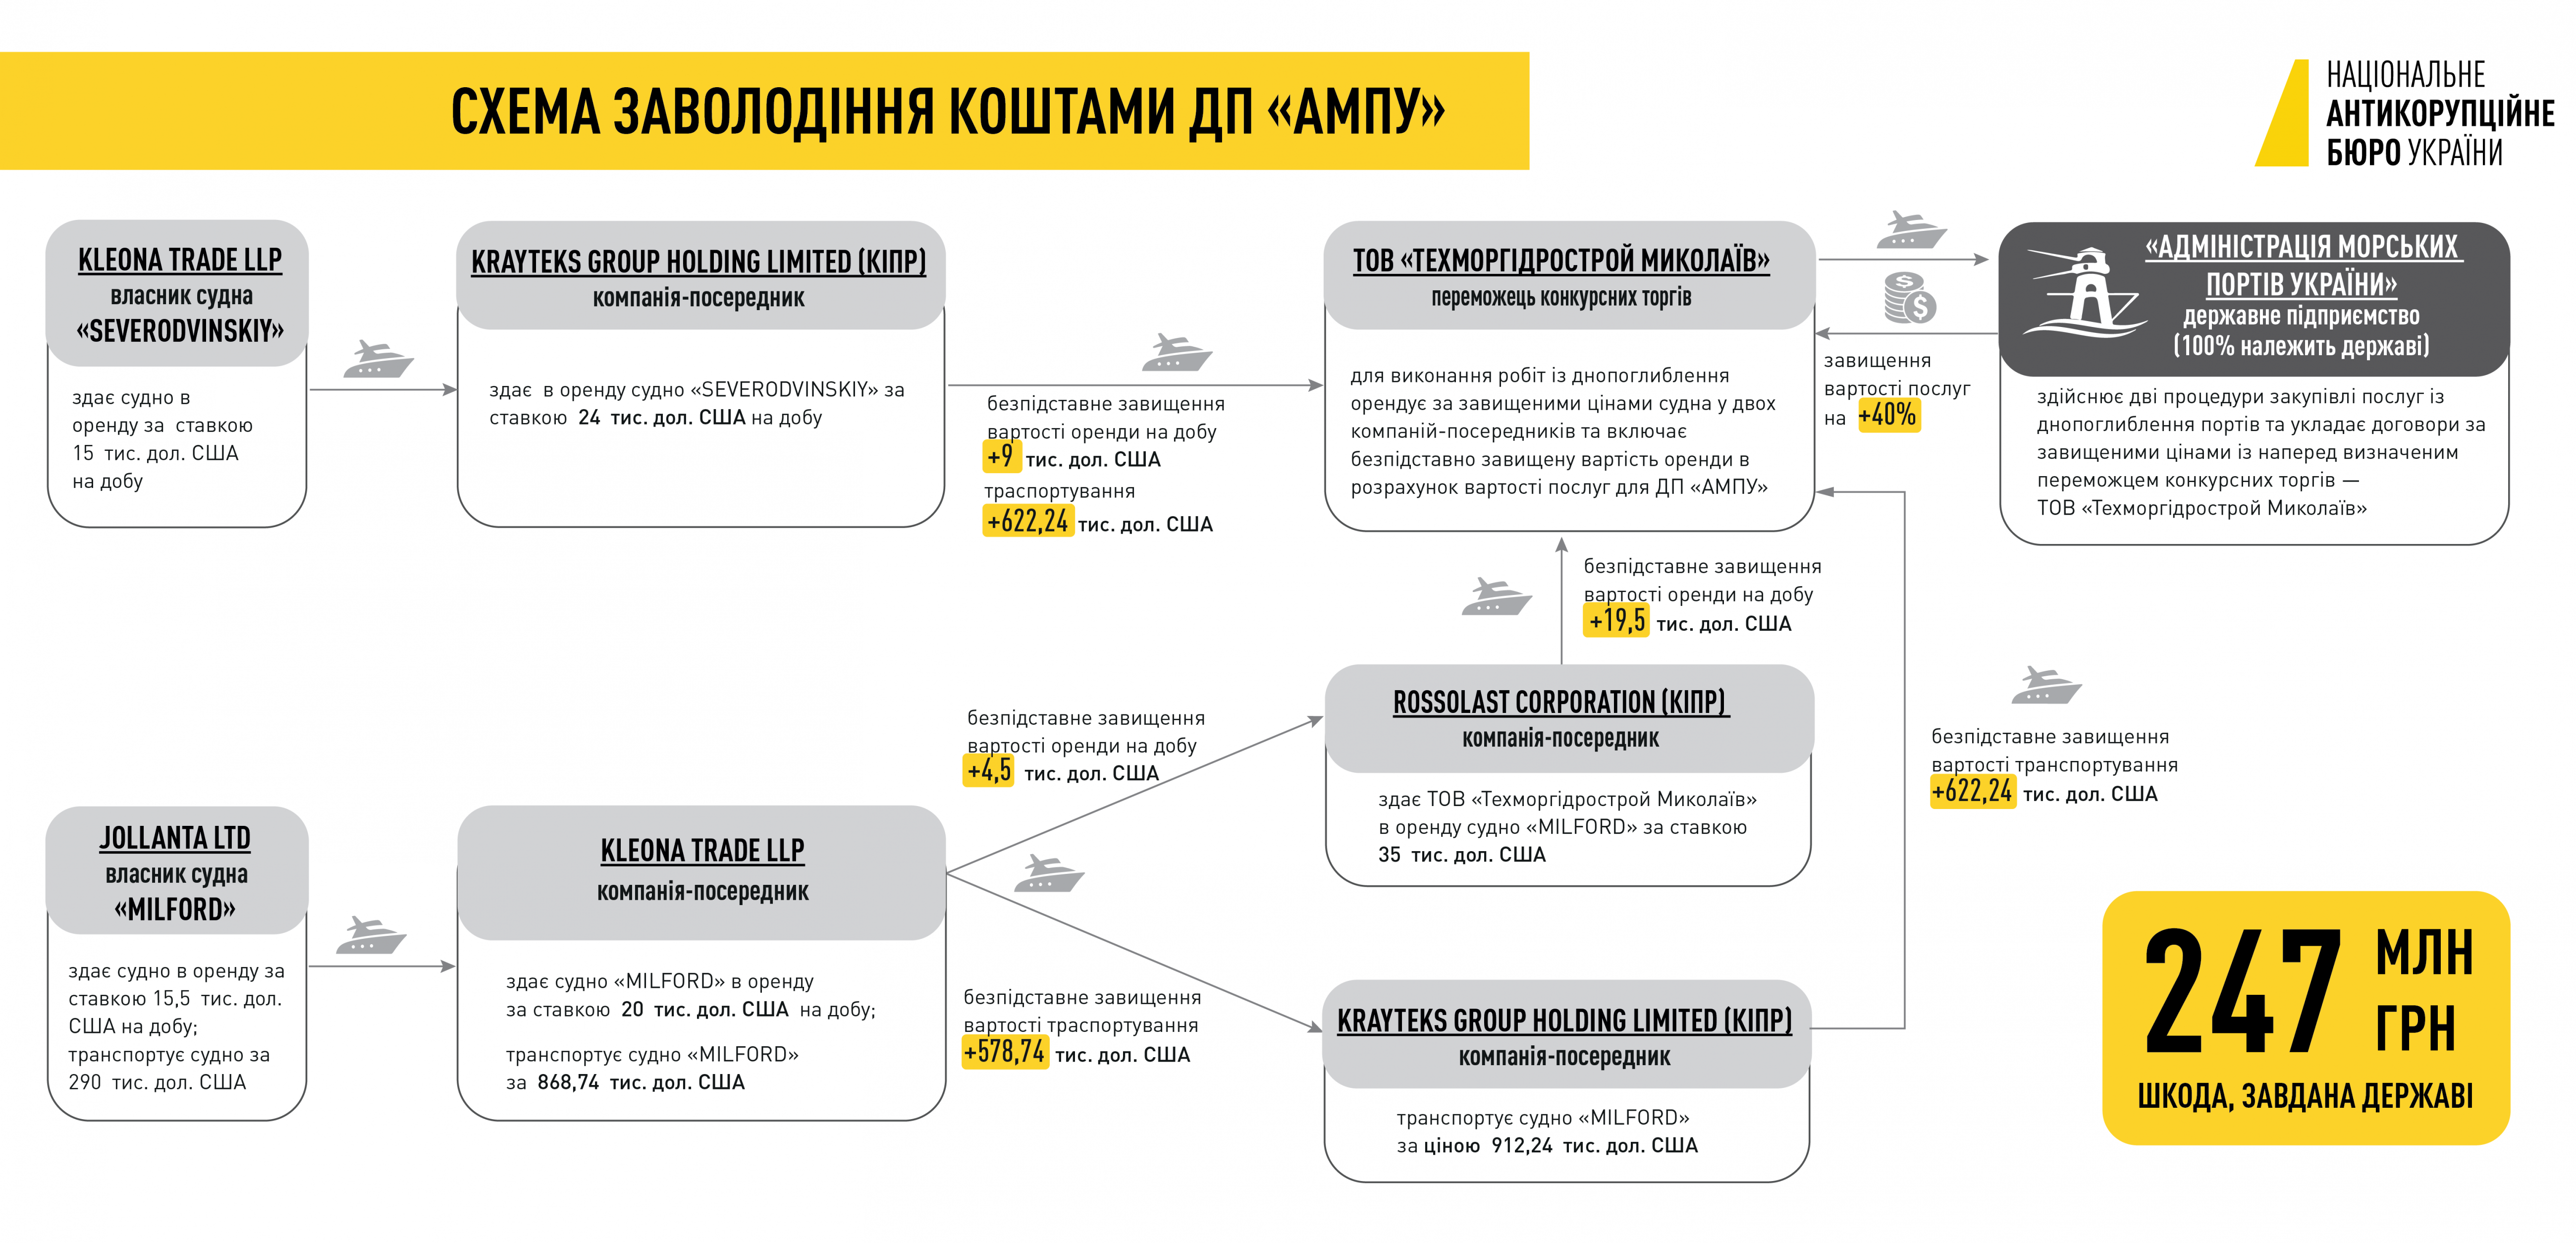 Расследование НАБУ по дноуглублениям: договор на 290 млн грн признали недействительным